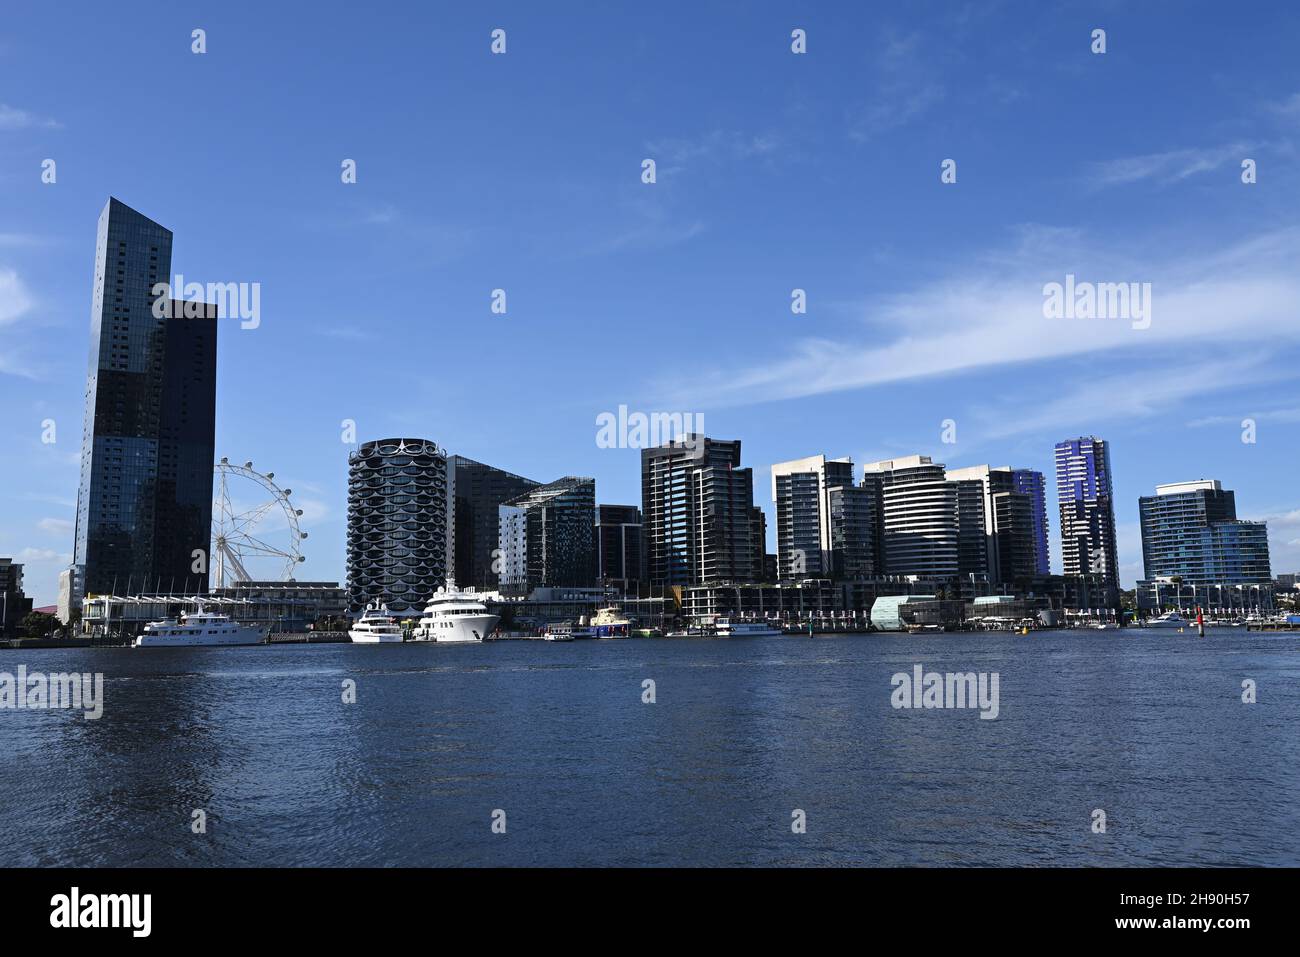 Vue sur le front de mer, avec des bateaux en premier plan, dans le quartier des Docklands de Melbourne, au cours d'un après-midi ensoleillé d'été Banque D'Images